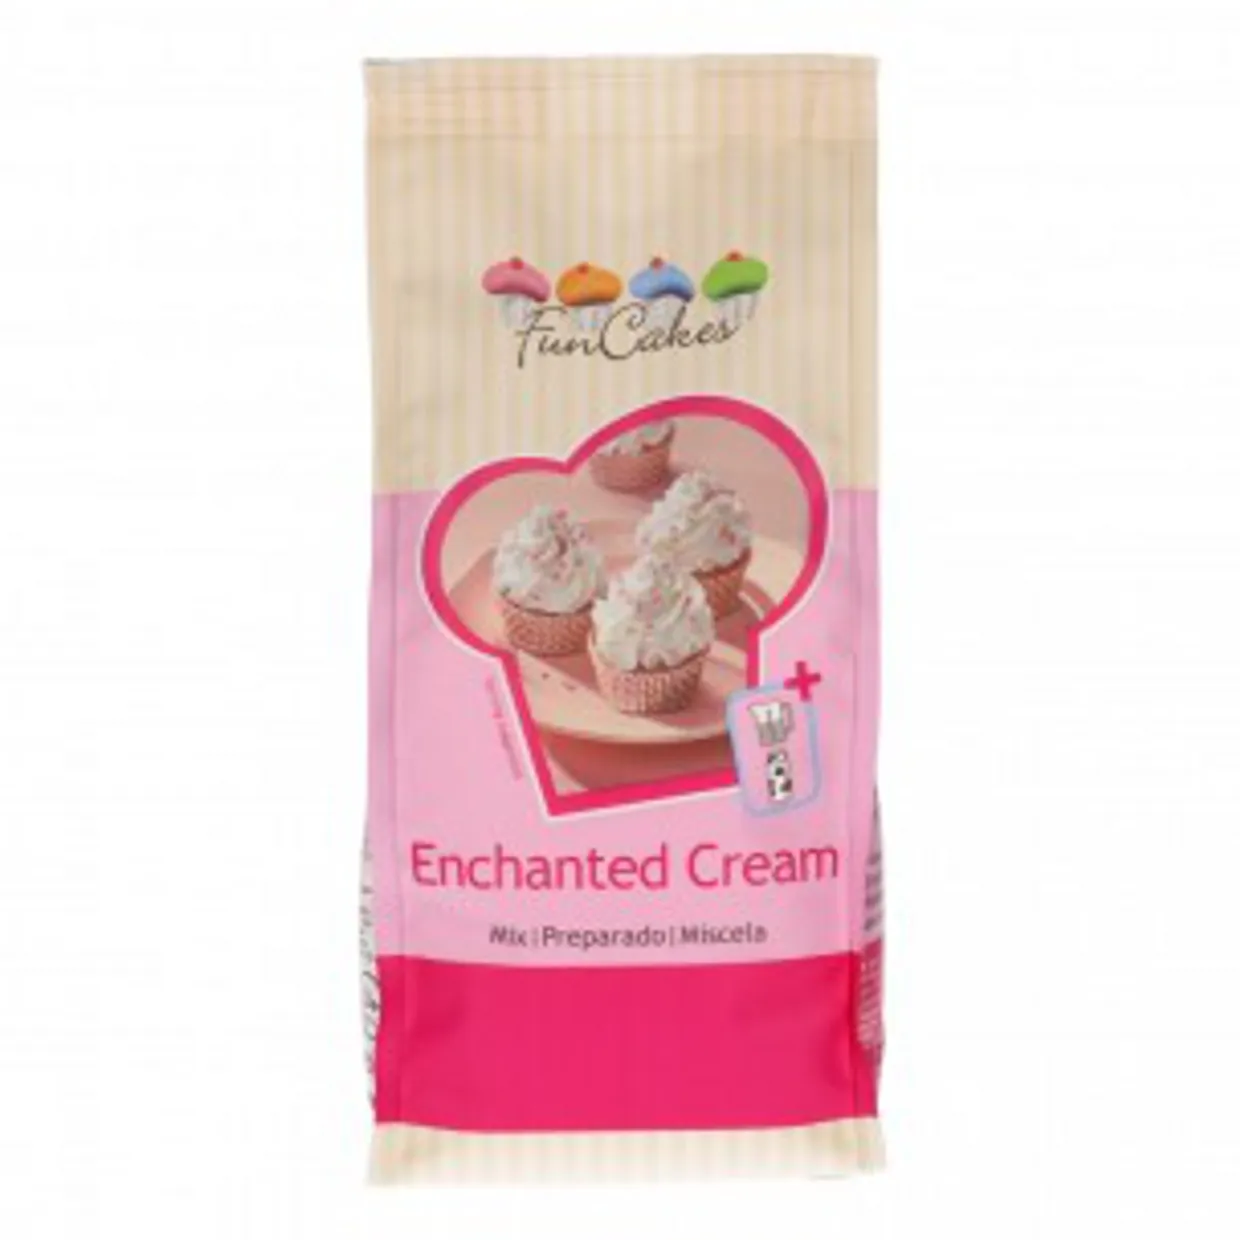 Mix voor Enchanted Cream¿ 450g